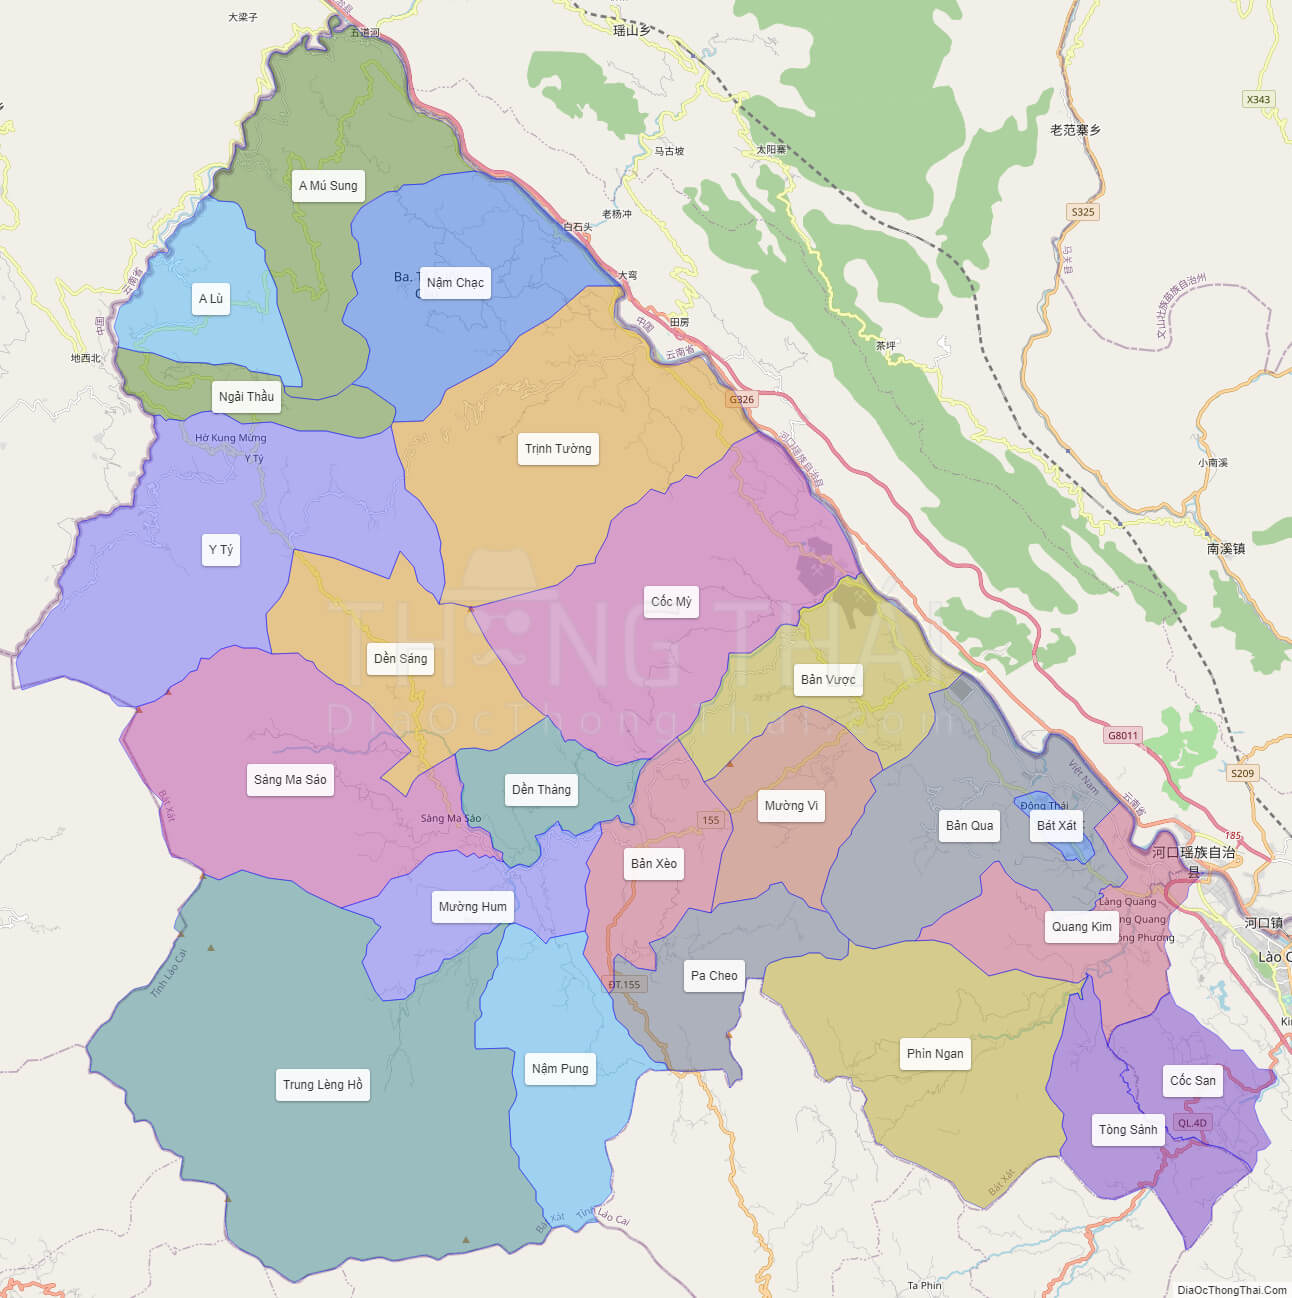 Bản đồ huyện Bát Xát - Lào Cai - Địa Ốc Thông Thái - 2024: Bản đồ huyện Bát Xát không chỉ để bạn tham quan theo cách thủy tinh mà còn hỗ trợ cho những nhà đầu tư tìm hiểu thị trường Bất động sản Tây Bắc. Với Địa Ốc Thông Thái, bạn sẽ có cơ hội đầu tư an toàn và hiệu quả hơn.